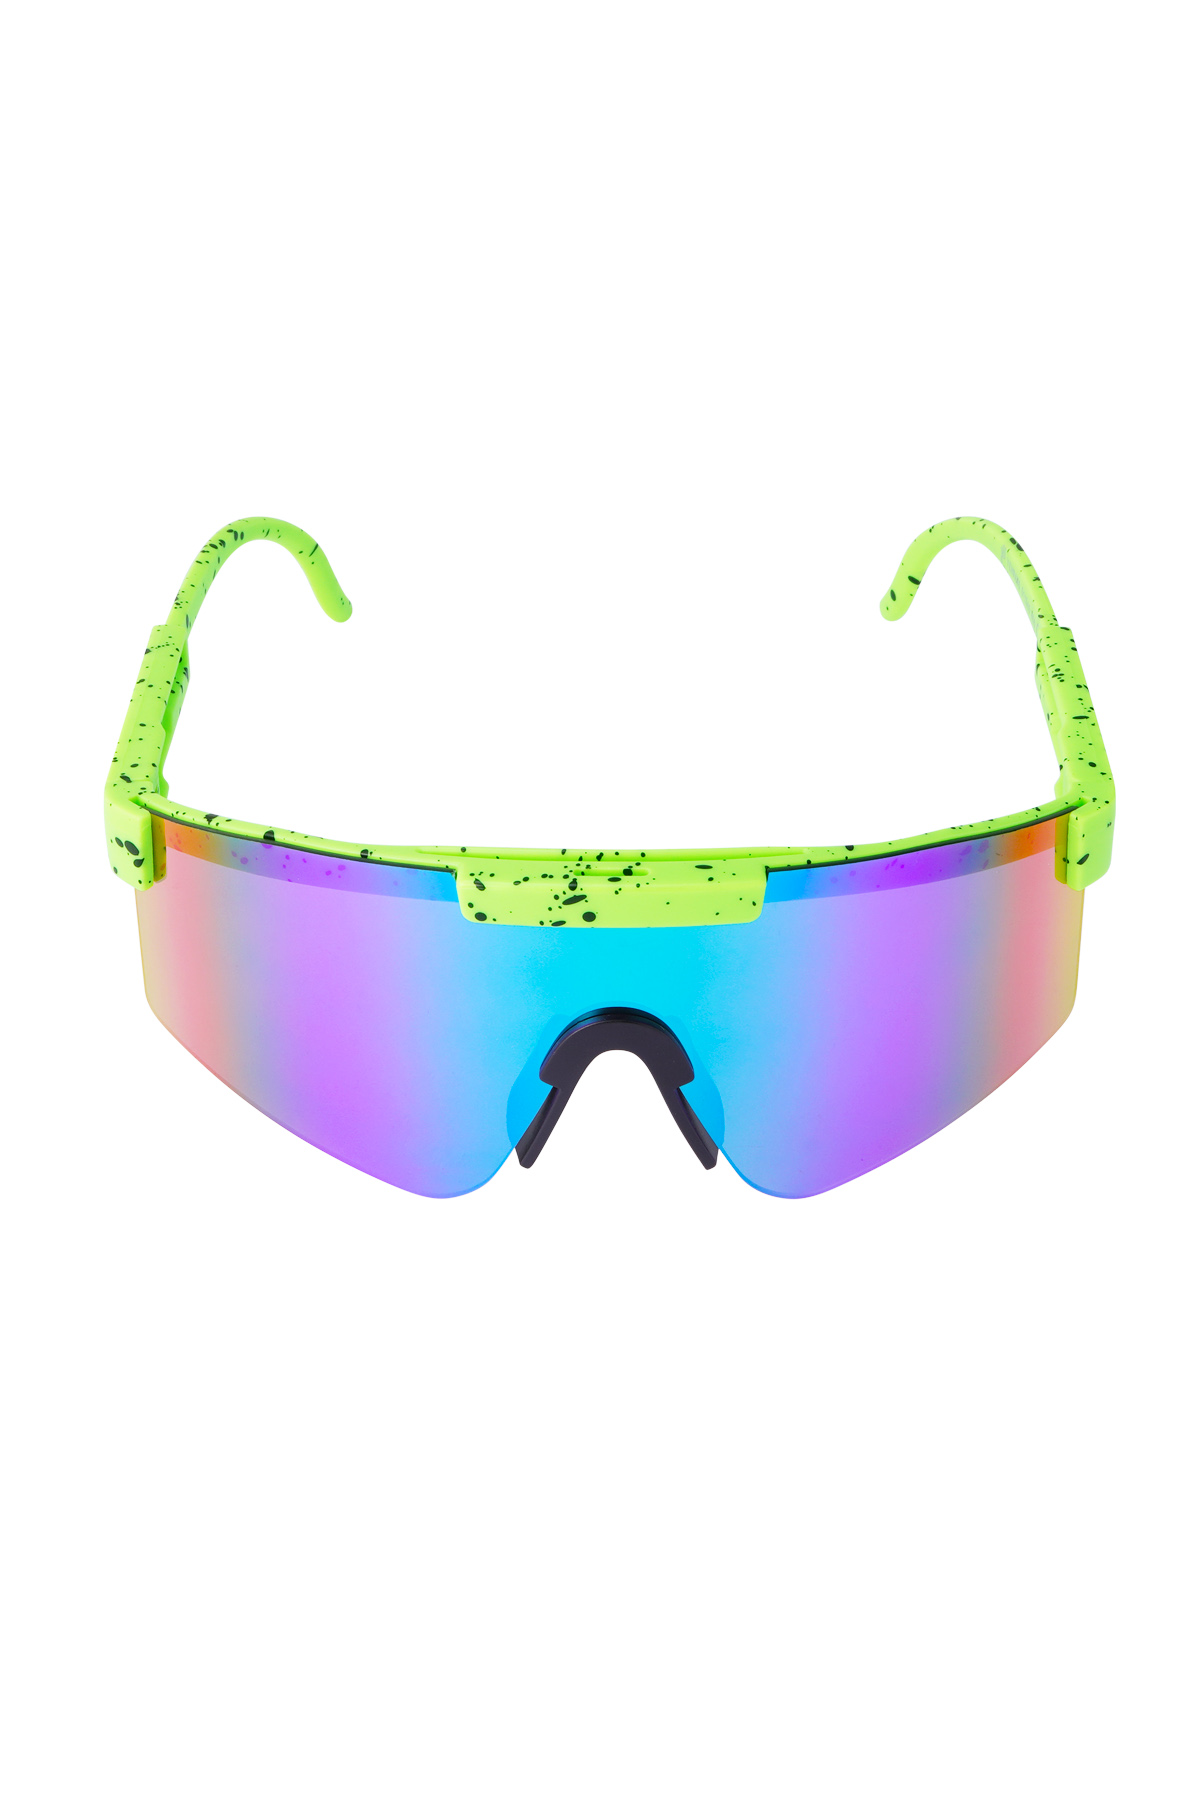 Güneş gözlüğü baskılı renkli lensler - yeşil Resim6